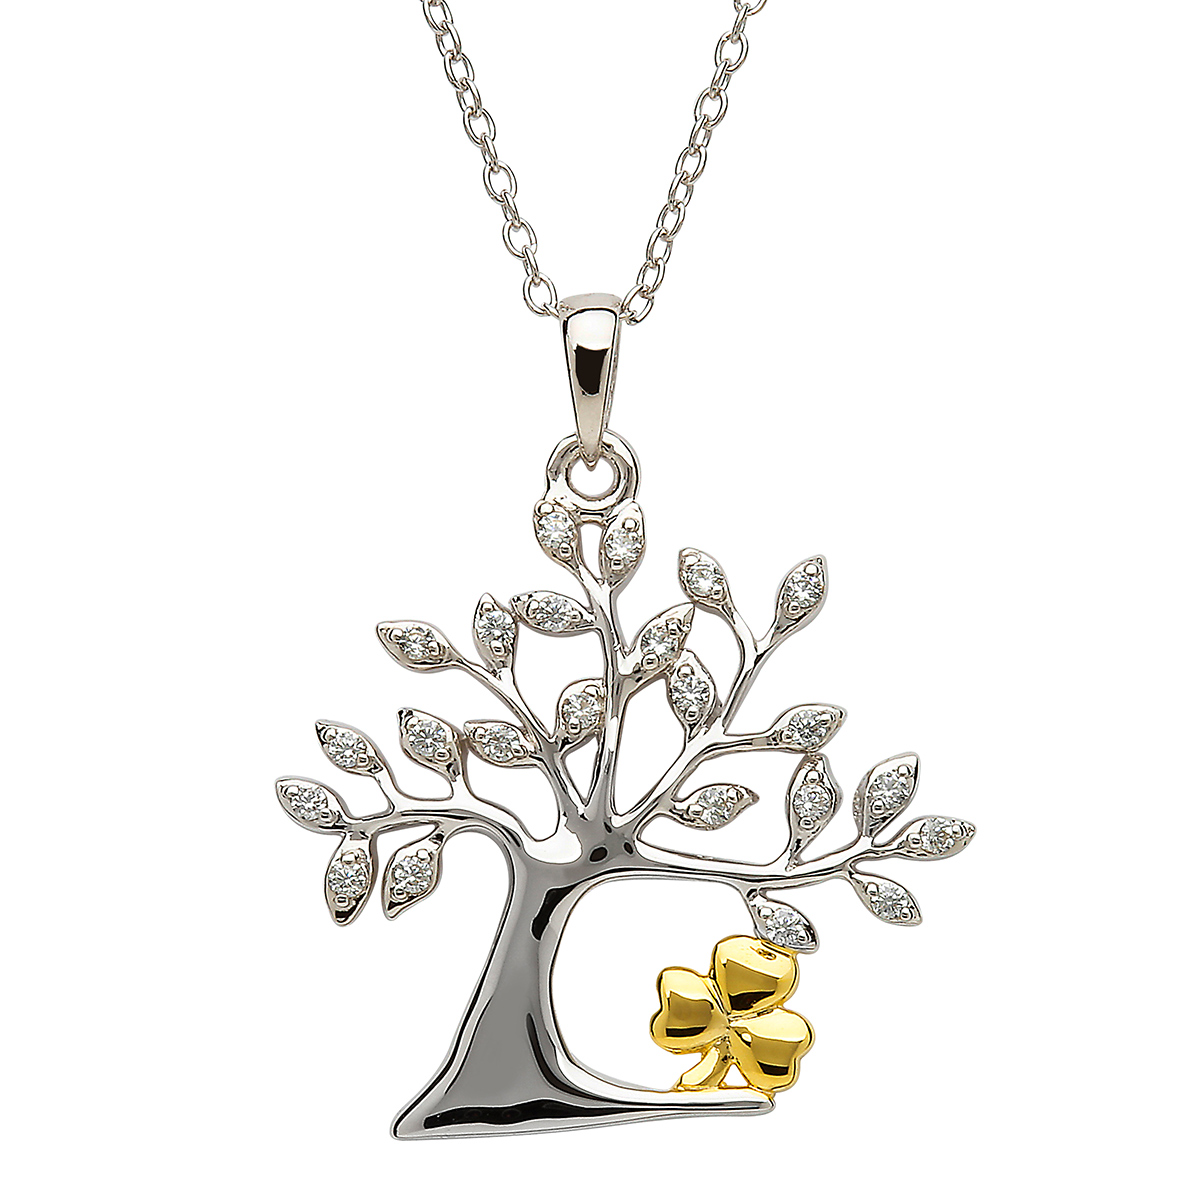 Lebensbaum Kette aus Irland - Silber mit vergoldetem Kleeblatt